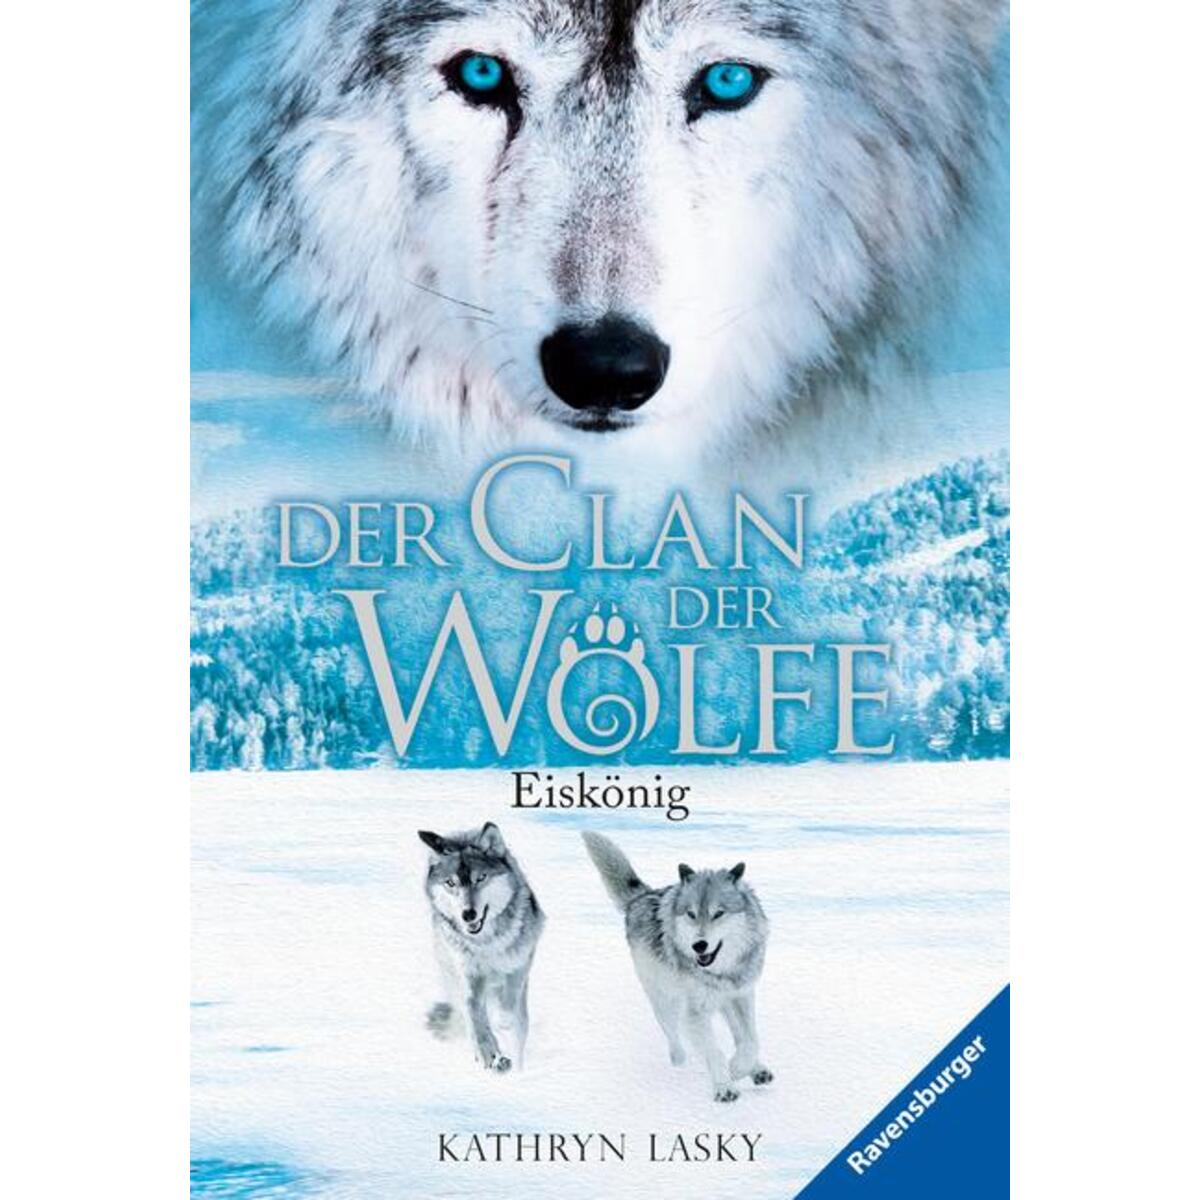 Der Clan der Wölfe 04: Eiskönig von Ravensburger Verlag